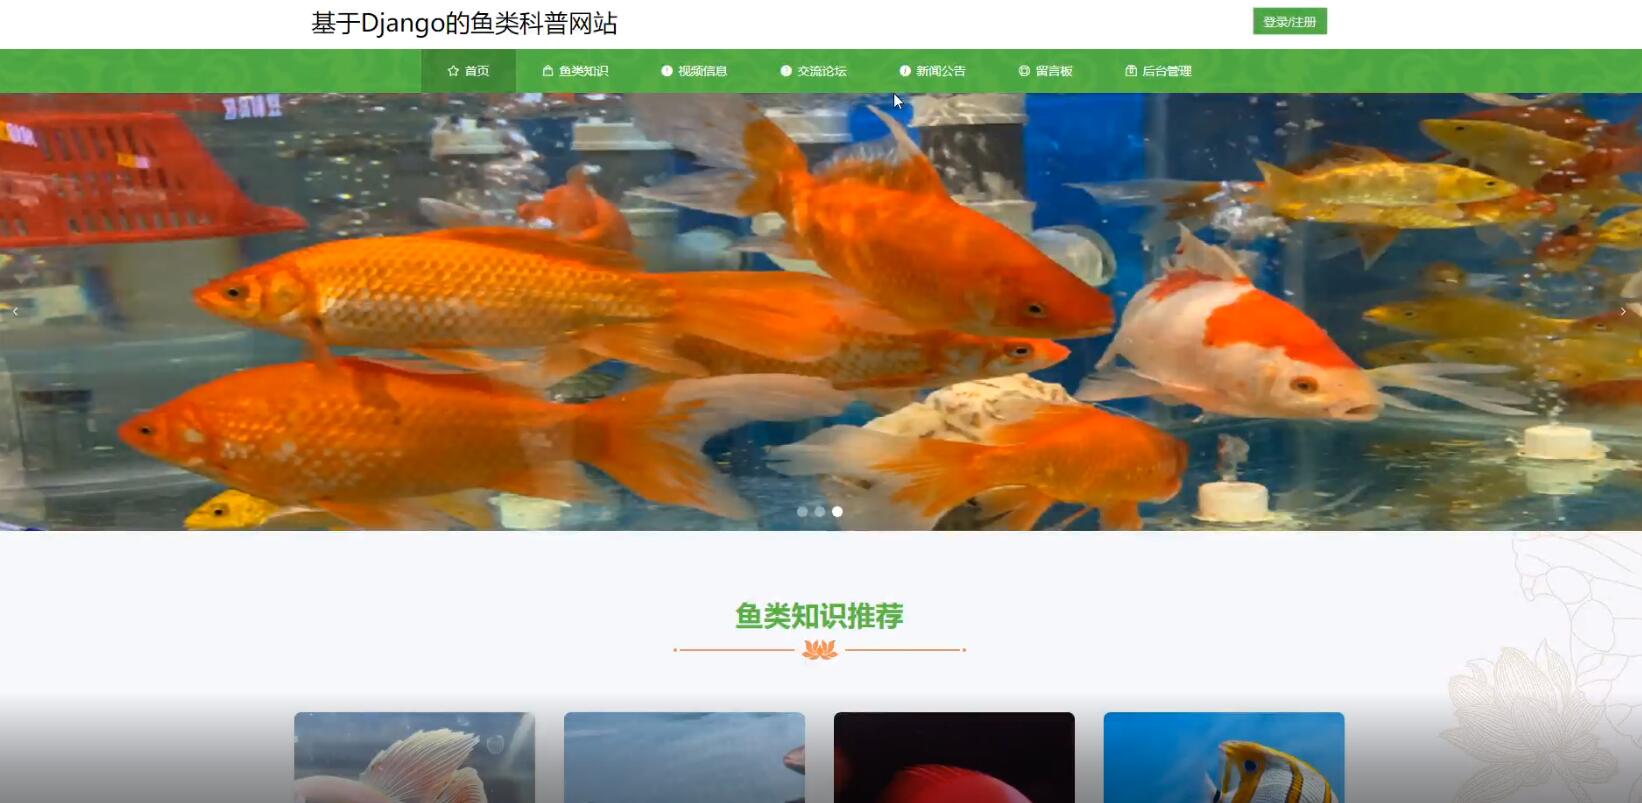 基于Django的鱼类科普网站-计算机毕业设计源码+LW文档_fish_02